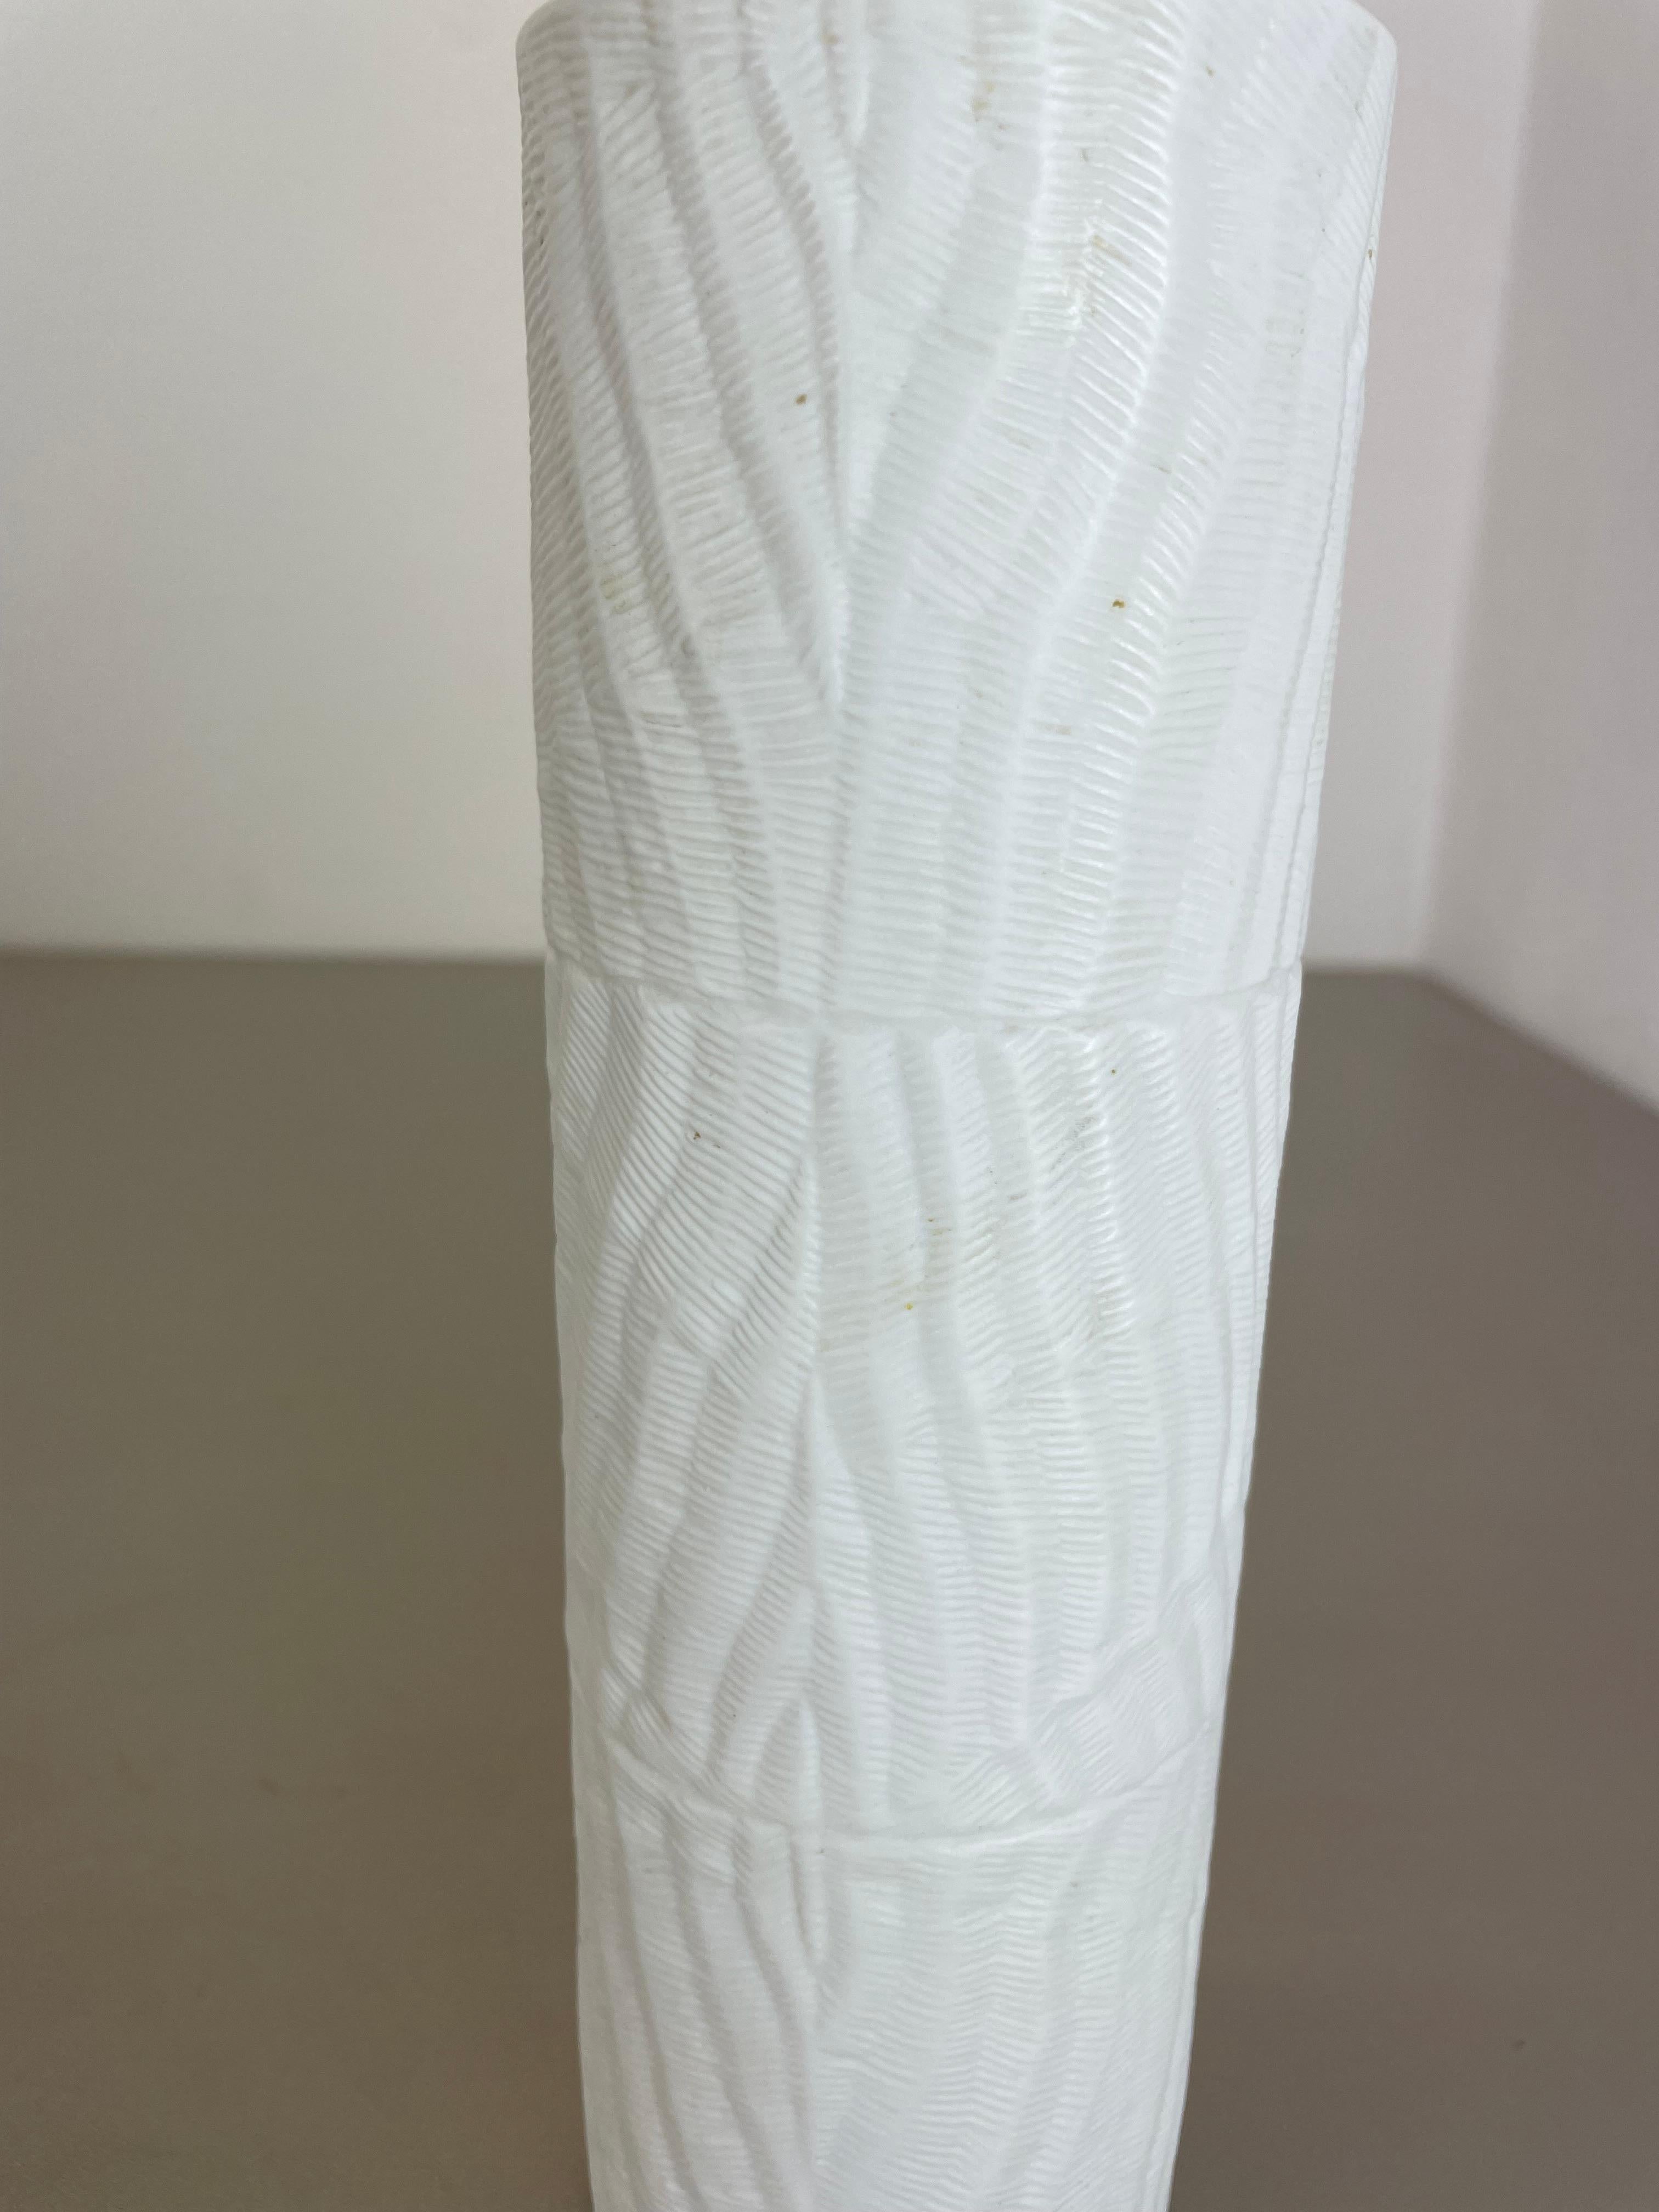 Large 23cm OP Art Vase Porcelain Vase by Martin Freyer for Rosenthal, Germany For Sale 1